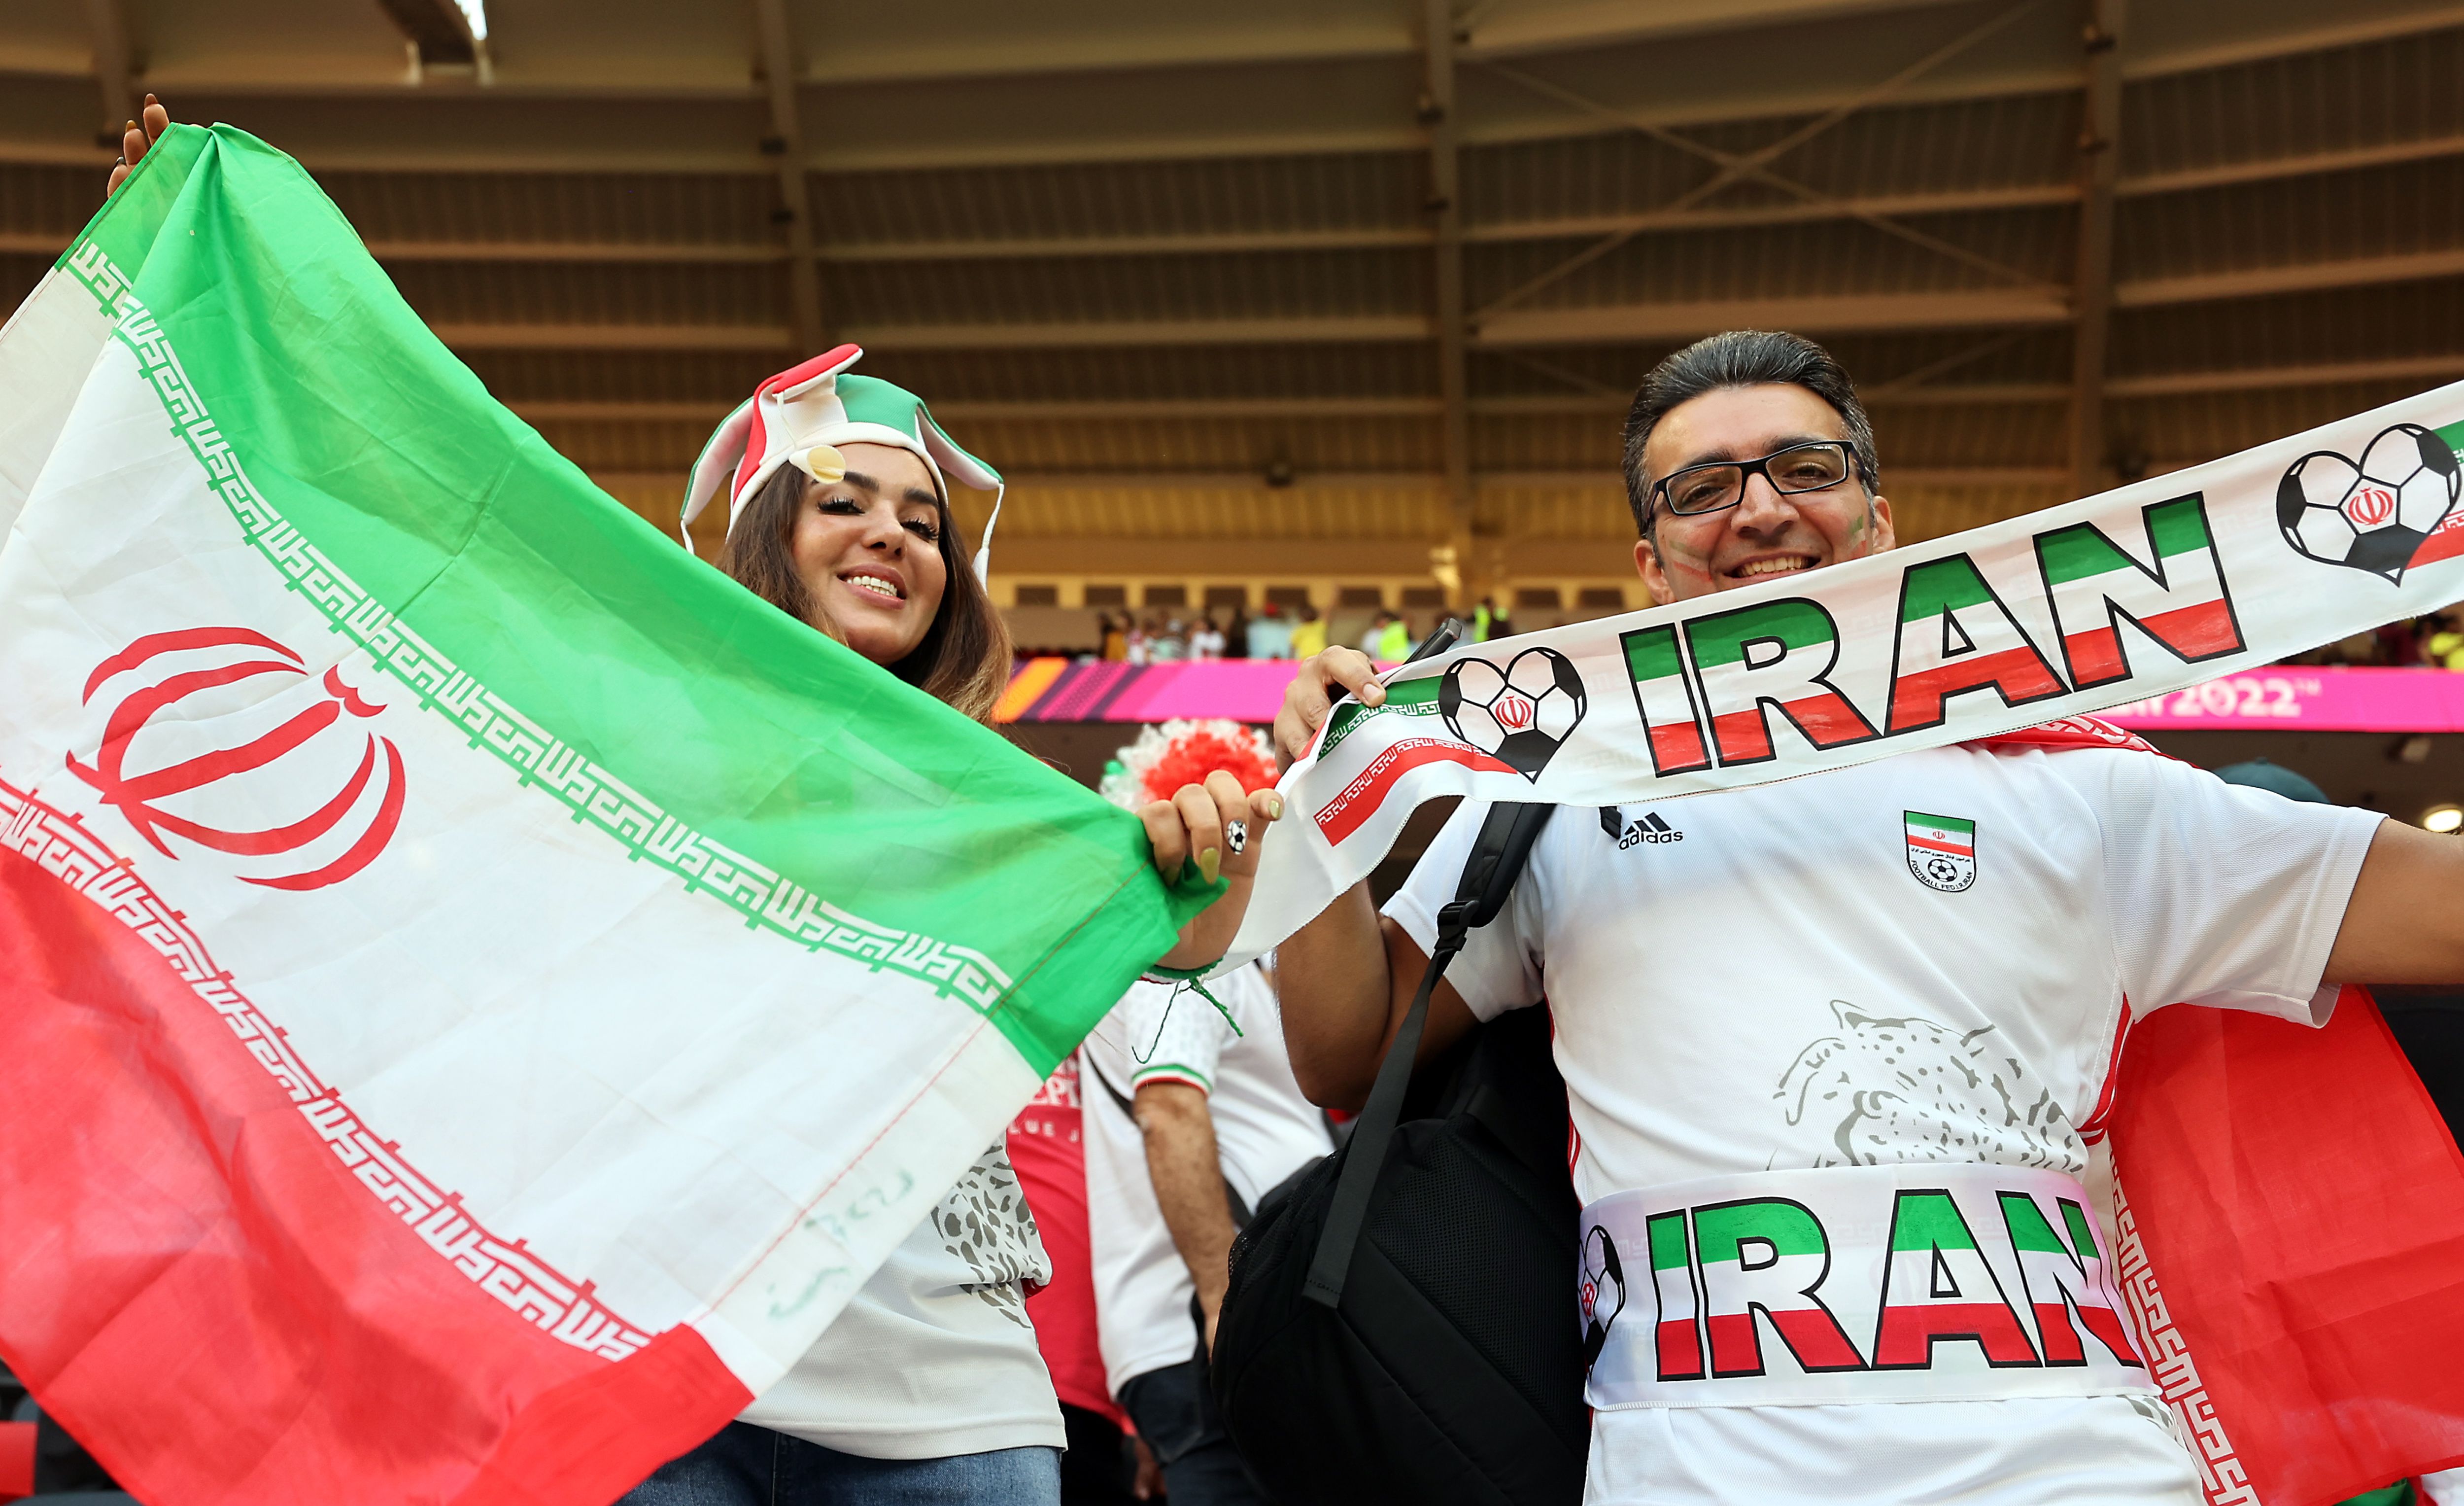 Már a meccs előtt elkezdődött a hidegháború Irán és az Egyesült Államok között a foci-vb-n